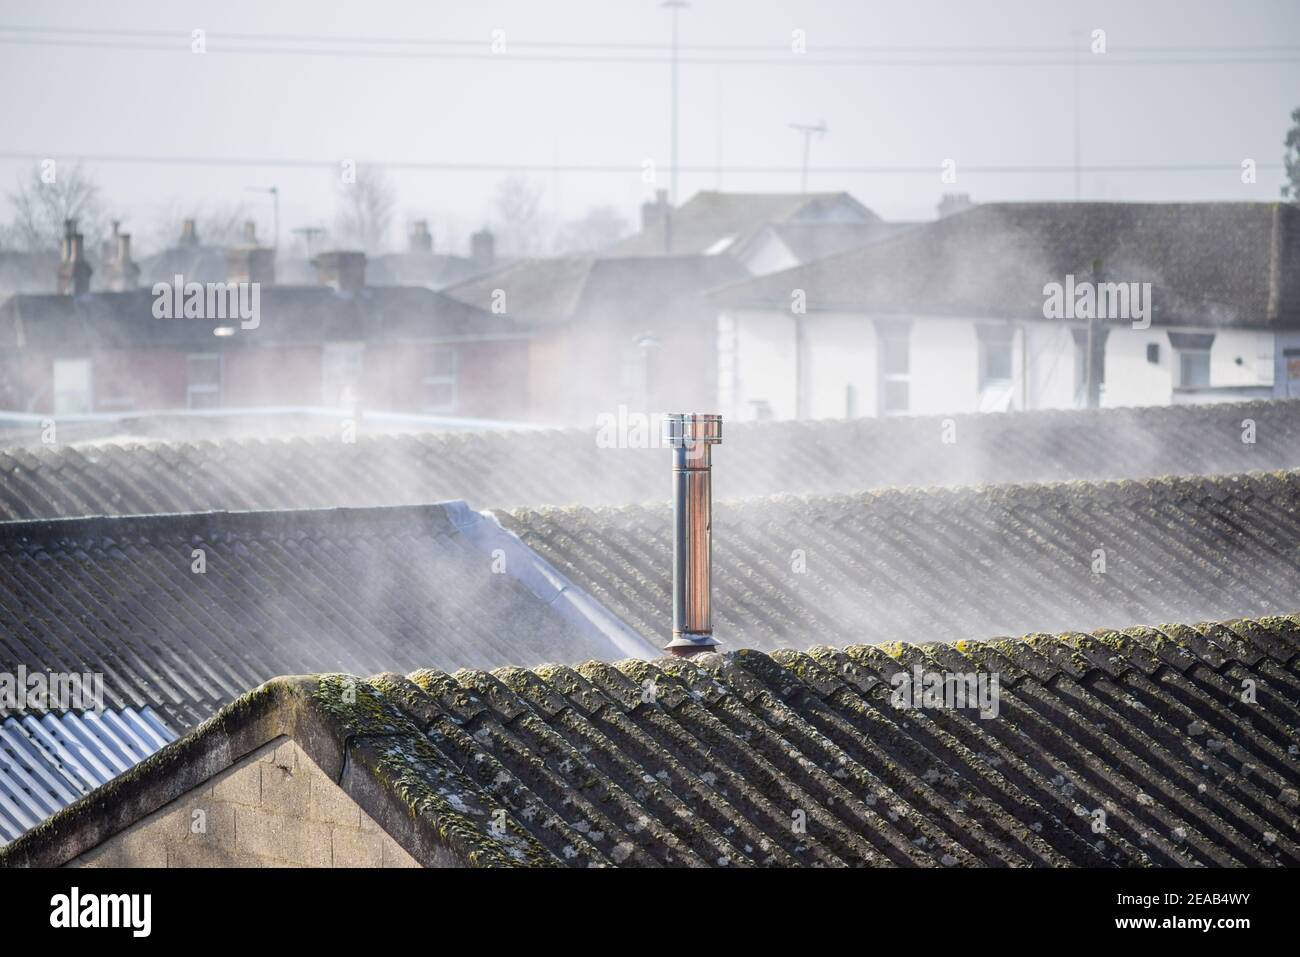 Tetti fumanti - evaporazione dai tetti bagnati in condizioni climatiche gelide, accelerata dalle superfici di riscaldamento del sole, Southampton, Inghilterra, Regno Unito Foto Stock